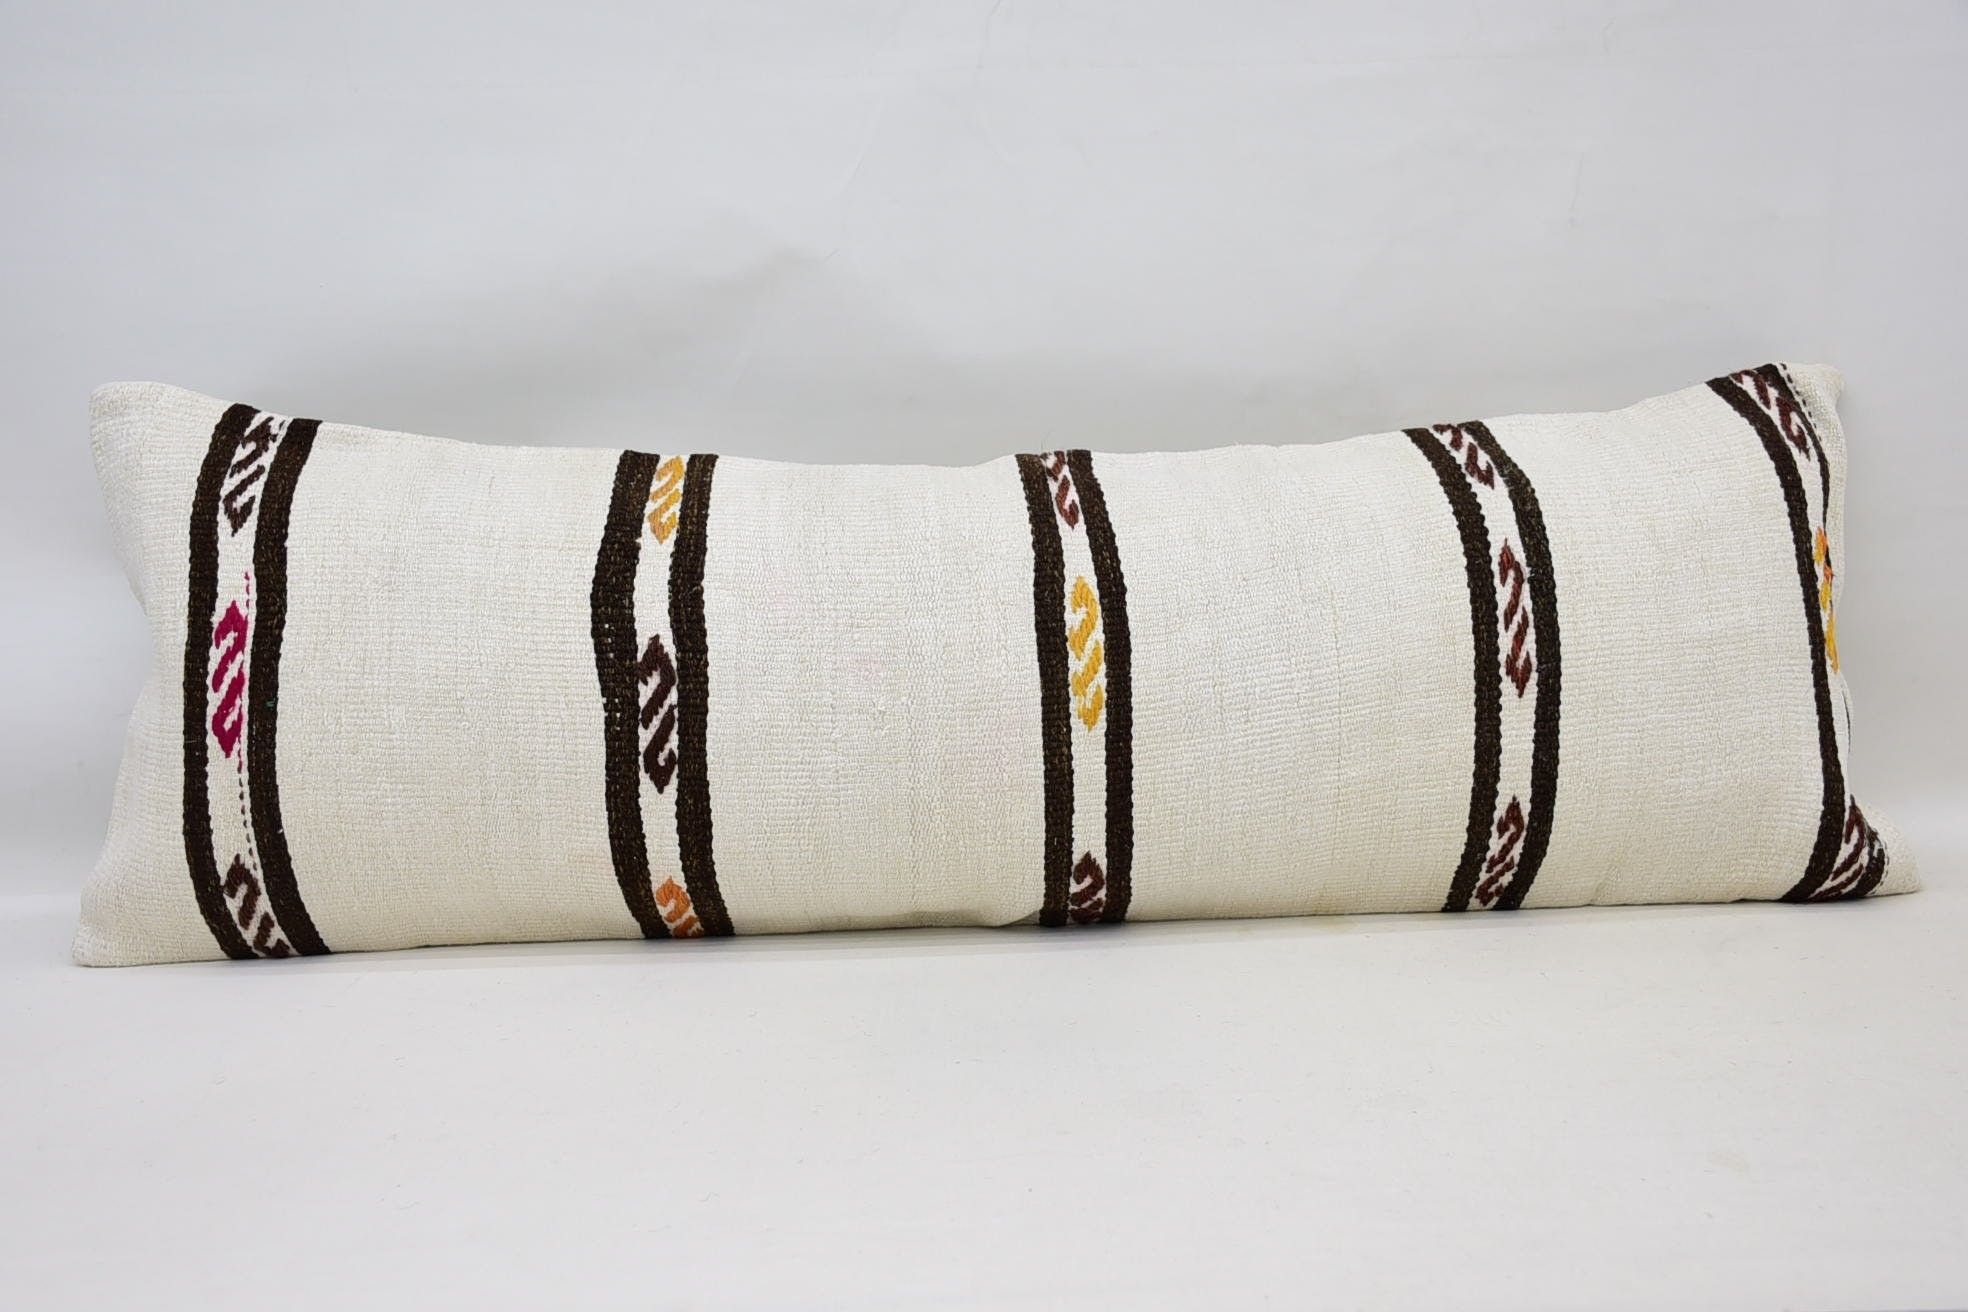 Throw Kilim Pillow, 16"x48" White Pillow Case, Crochet Pattern Pillow Sham, Antique Pillows, Vintage Kilim Throw Pillow